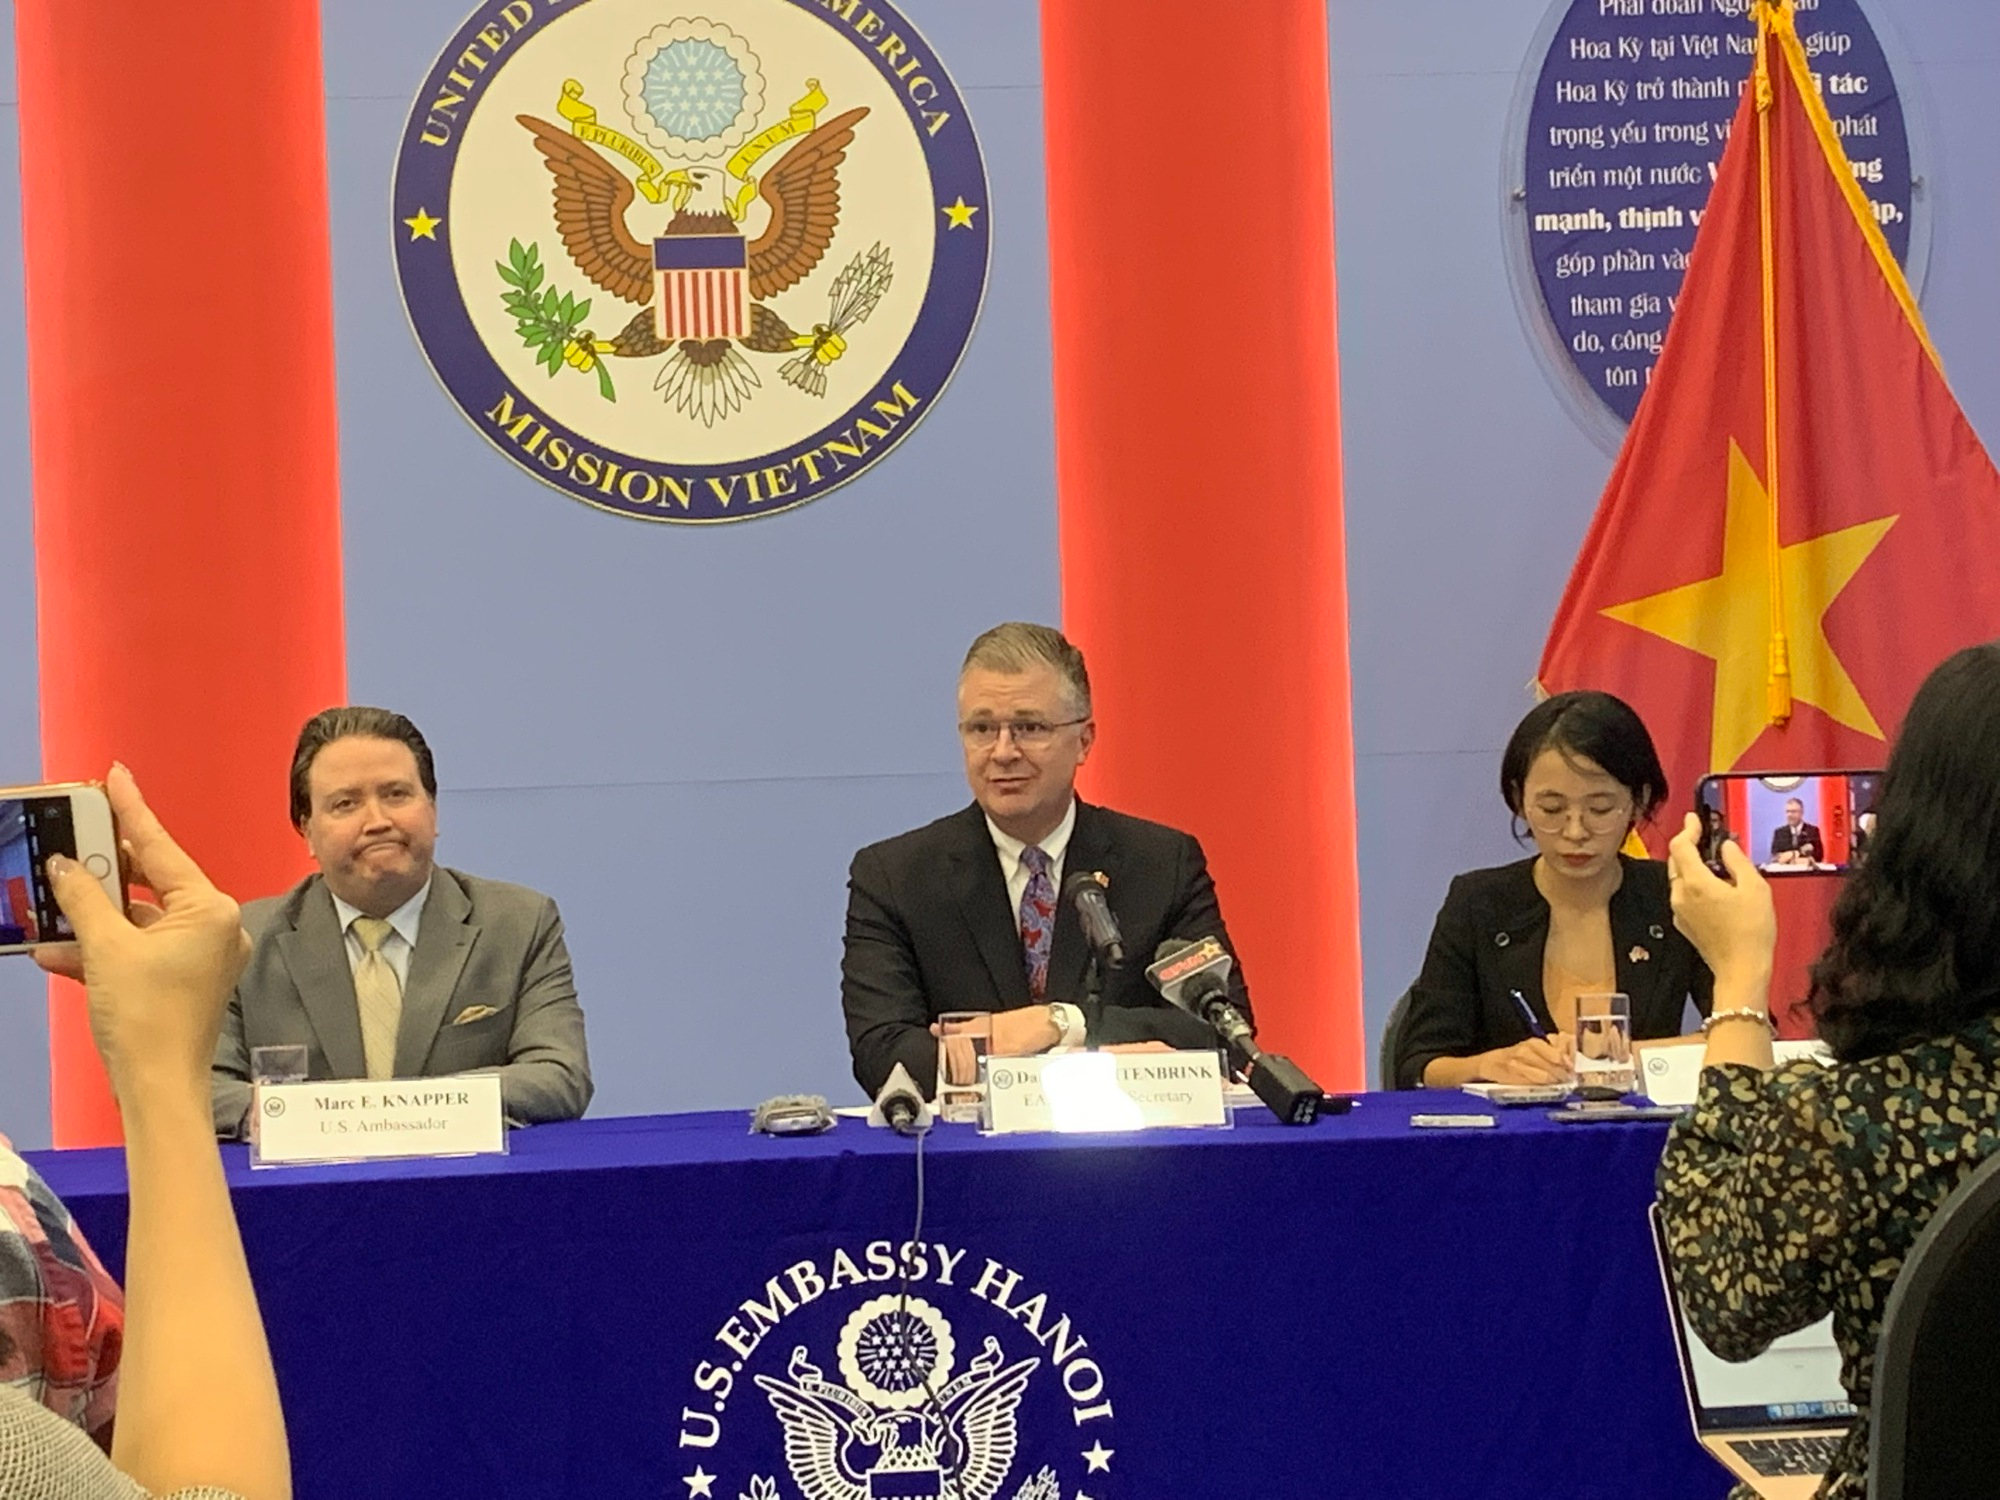 Quan chức ngoại giao Mỹ chúc mừng Việt Nam trúng cử Hội đồng Nhân quyền LHQ - Ảnh 1.